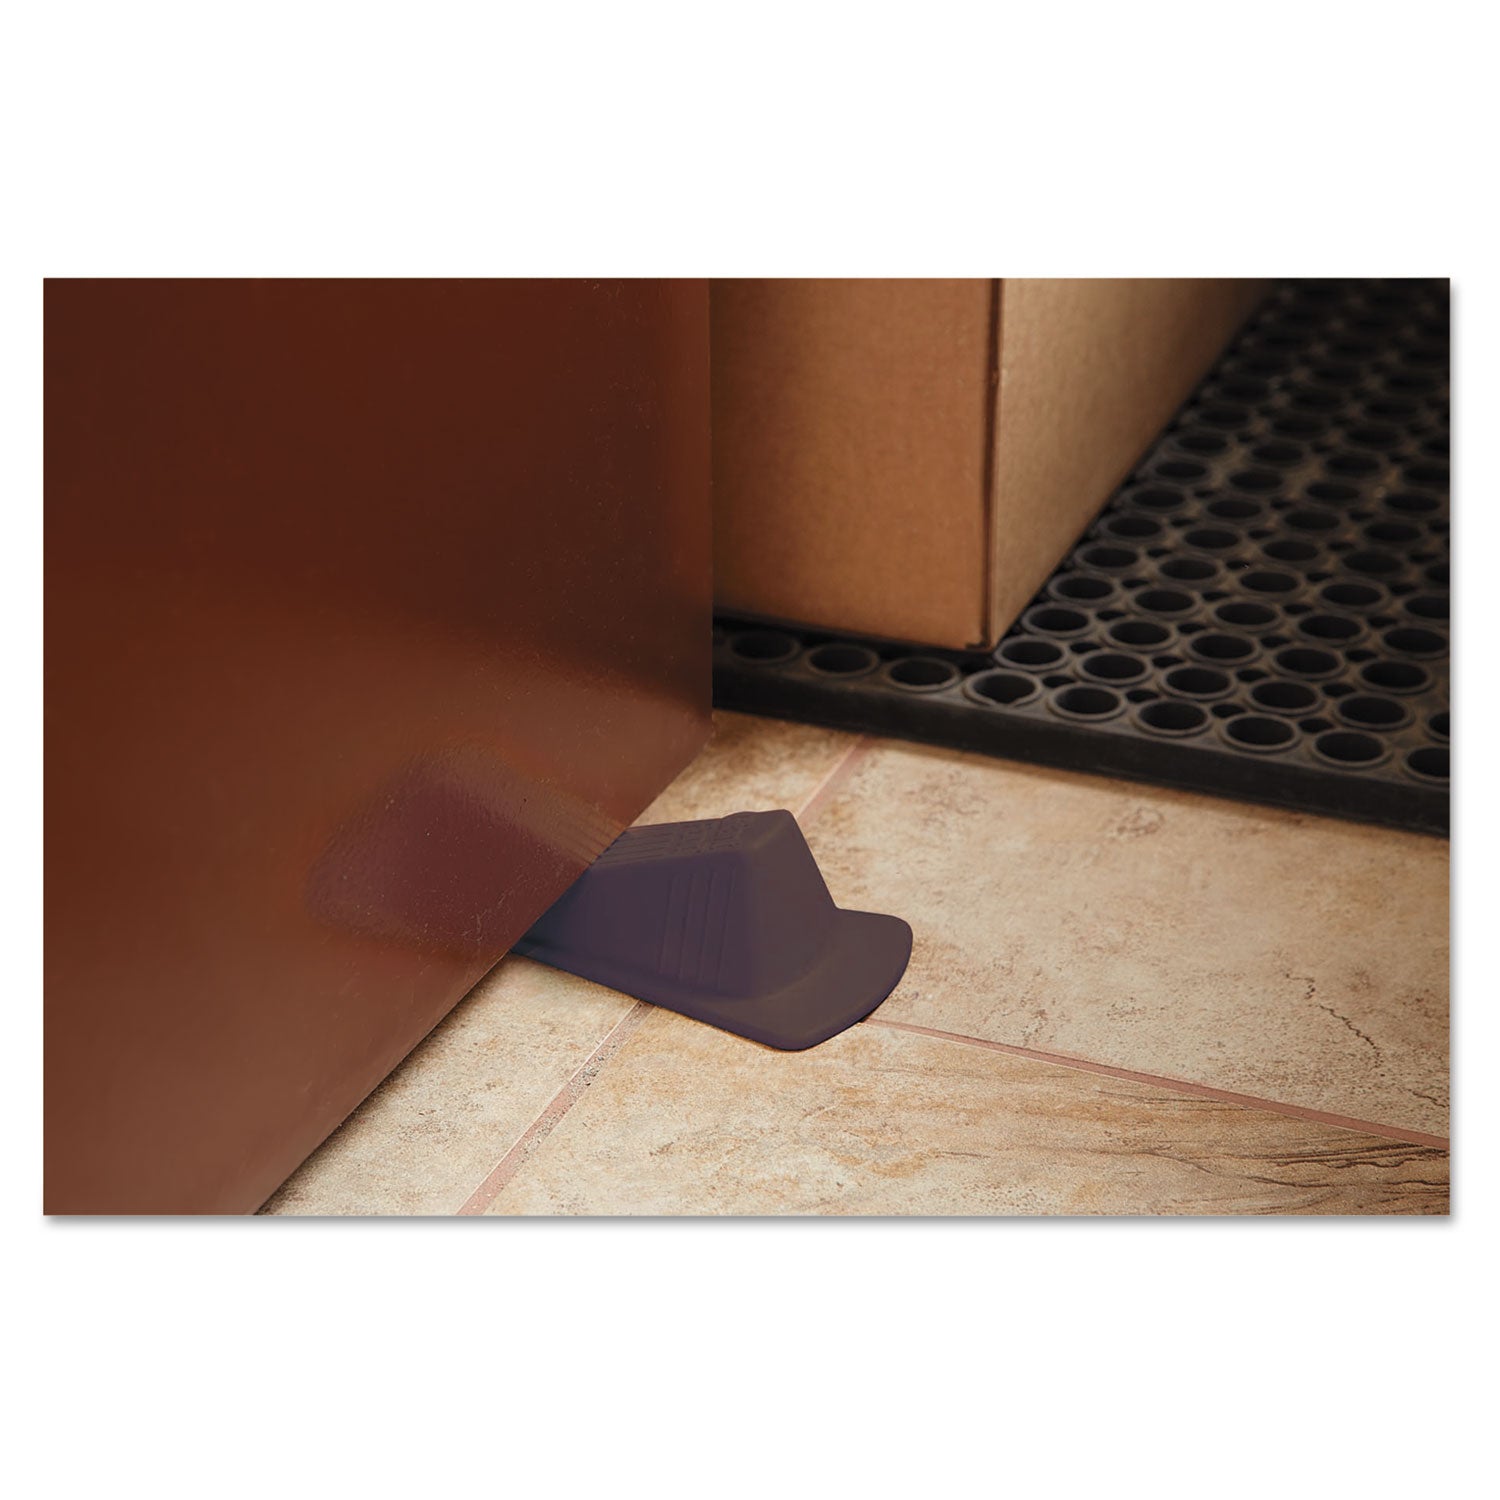 Giant Foot Doorstop, No-Slip Rubber Wedge, 3.5w x 6.75d x 2h, Brown - 